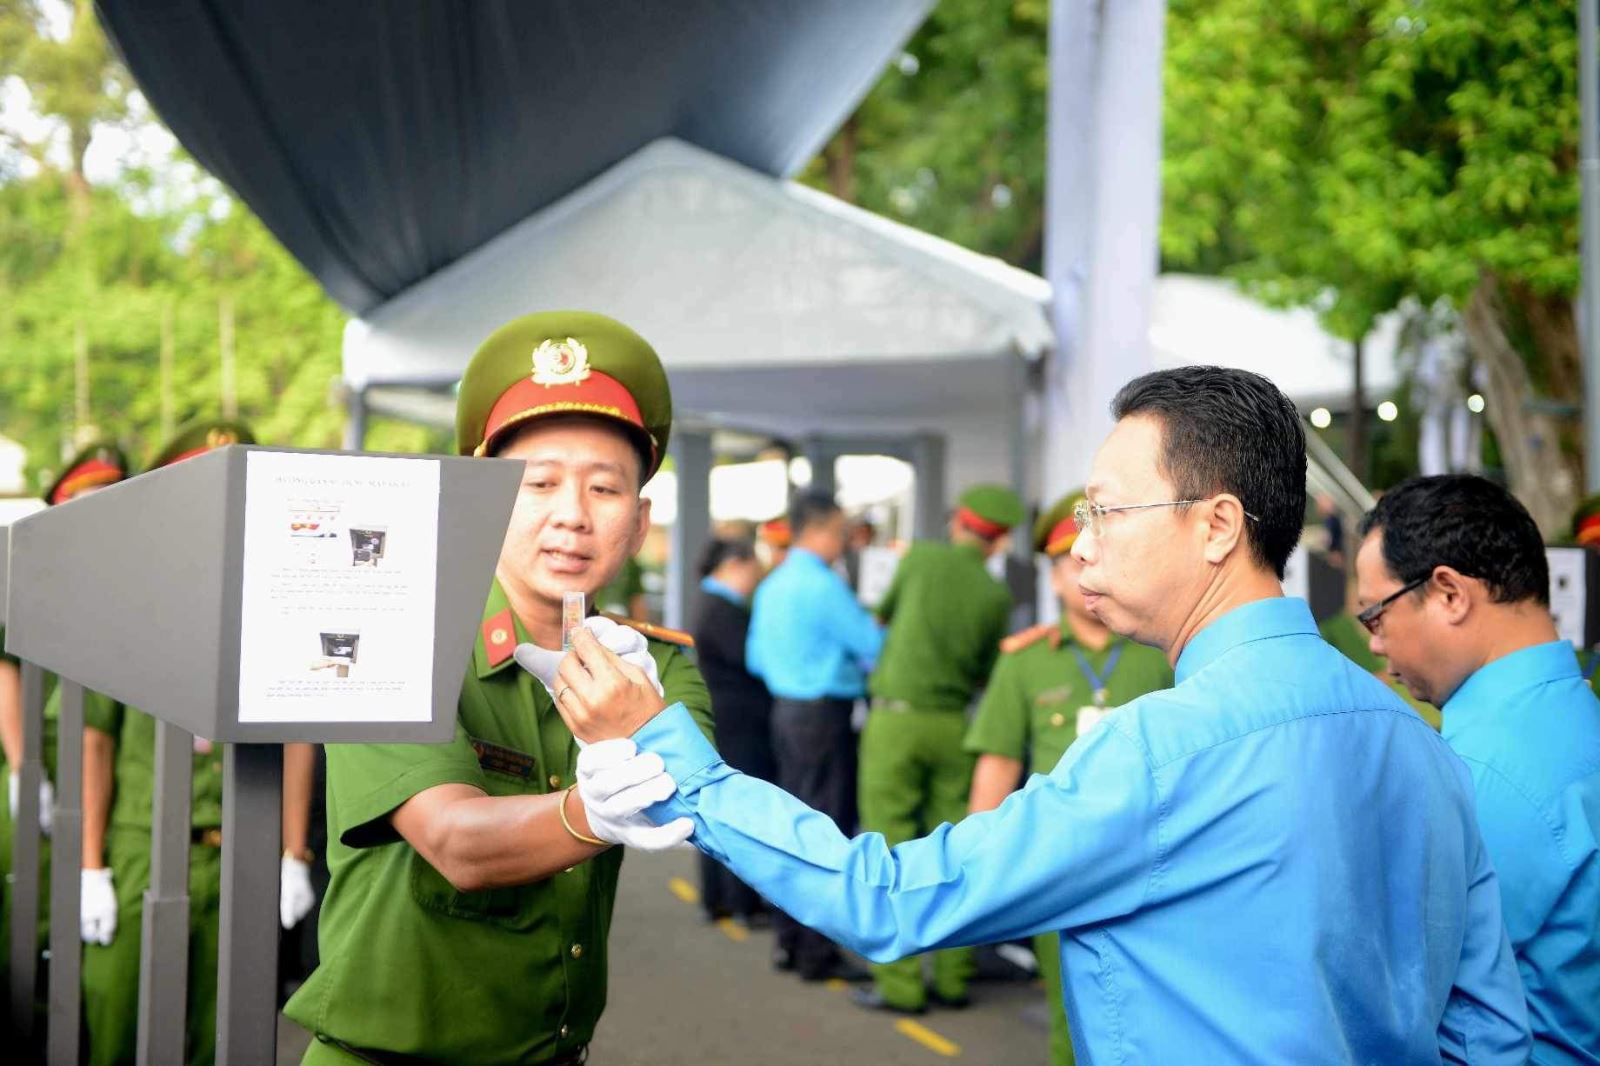 Ông Nguyễn Thành Đô, Trưởng Ban chính sách - pháp luật của Liên đoàn Lao động TP Hồ Chí Minh thực hiện quét kiểm tra an ninh trước khi vào viếng cùng đoàn Liên đoàn Lao động TP Hồ Chí Minh.